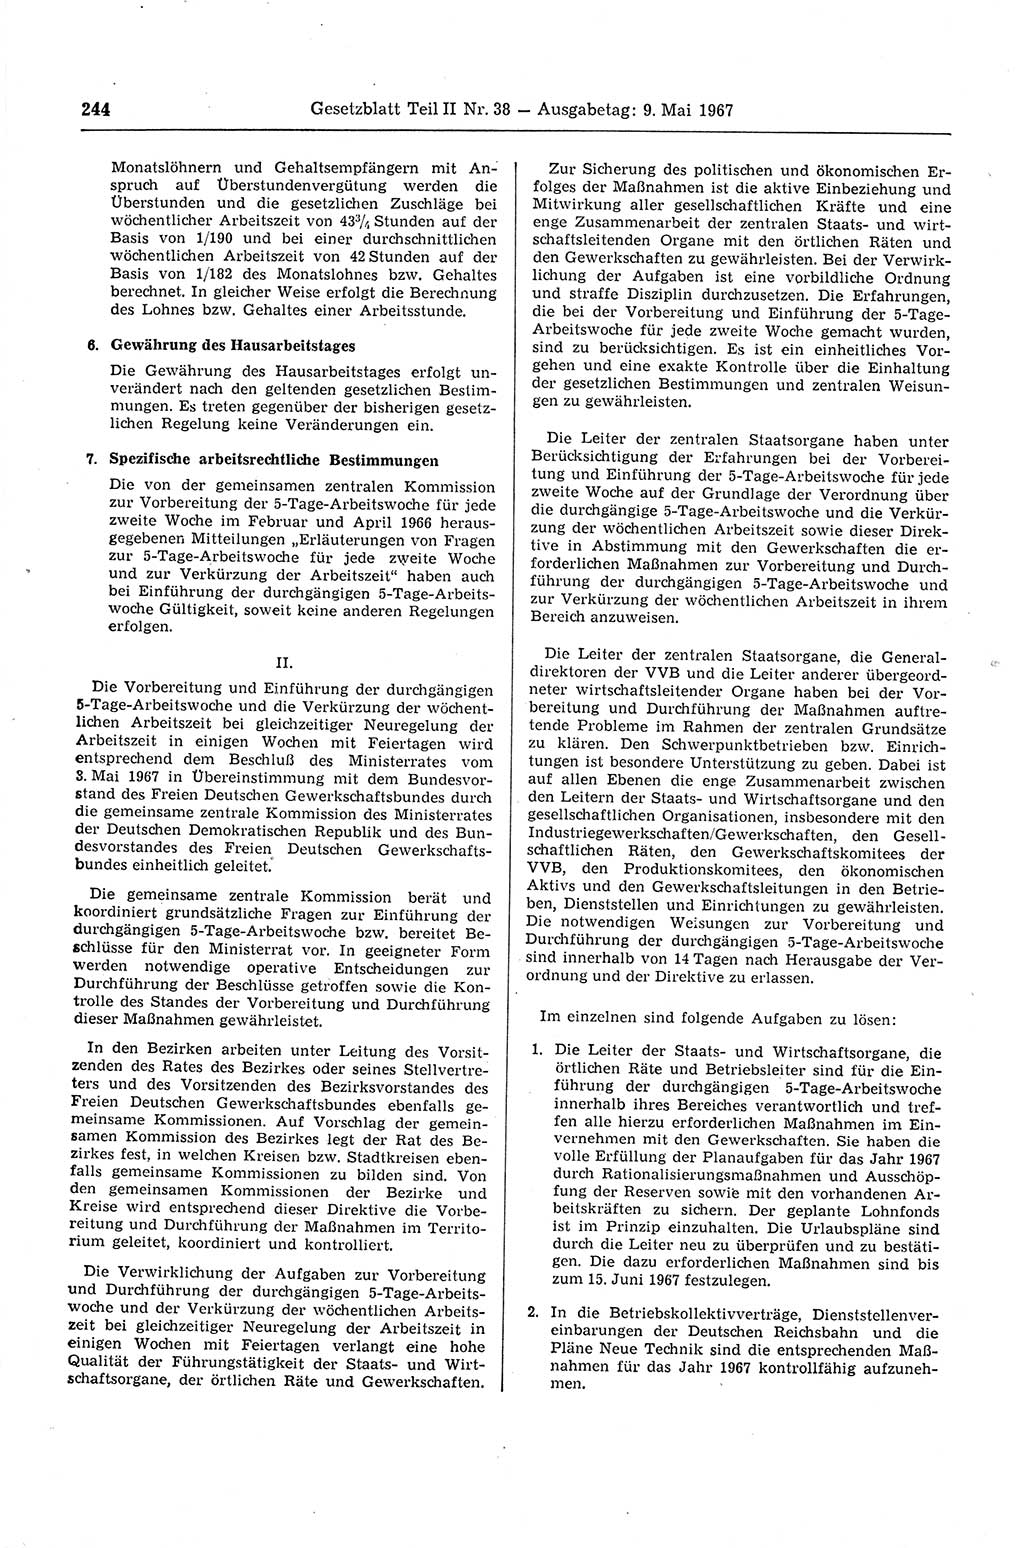 Gesetzblatt (GBl.) der Deutschen Demokratischen Republik (DDR) Teil ⅠⅠ 1967, Seite 244 (GBl. DDR ⅠⅠ 1967, S. 244)